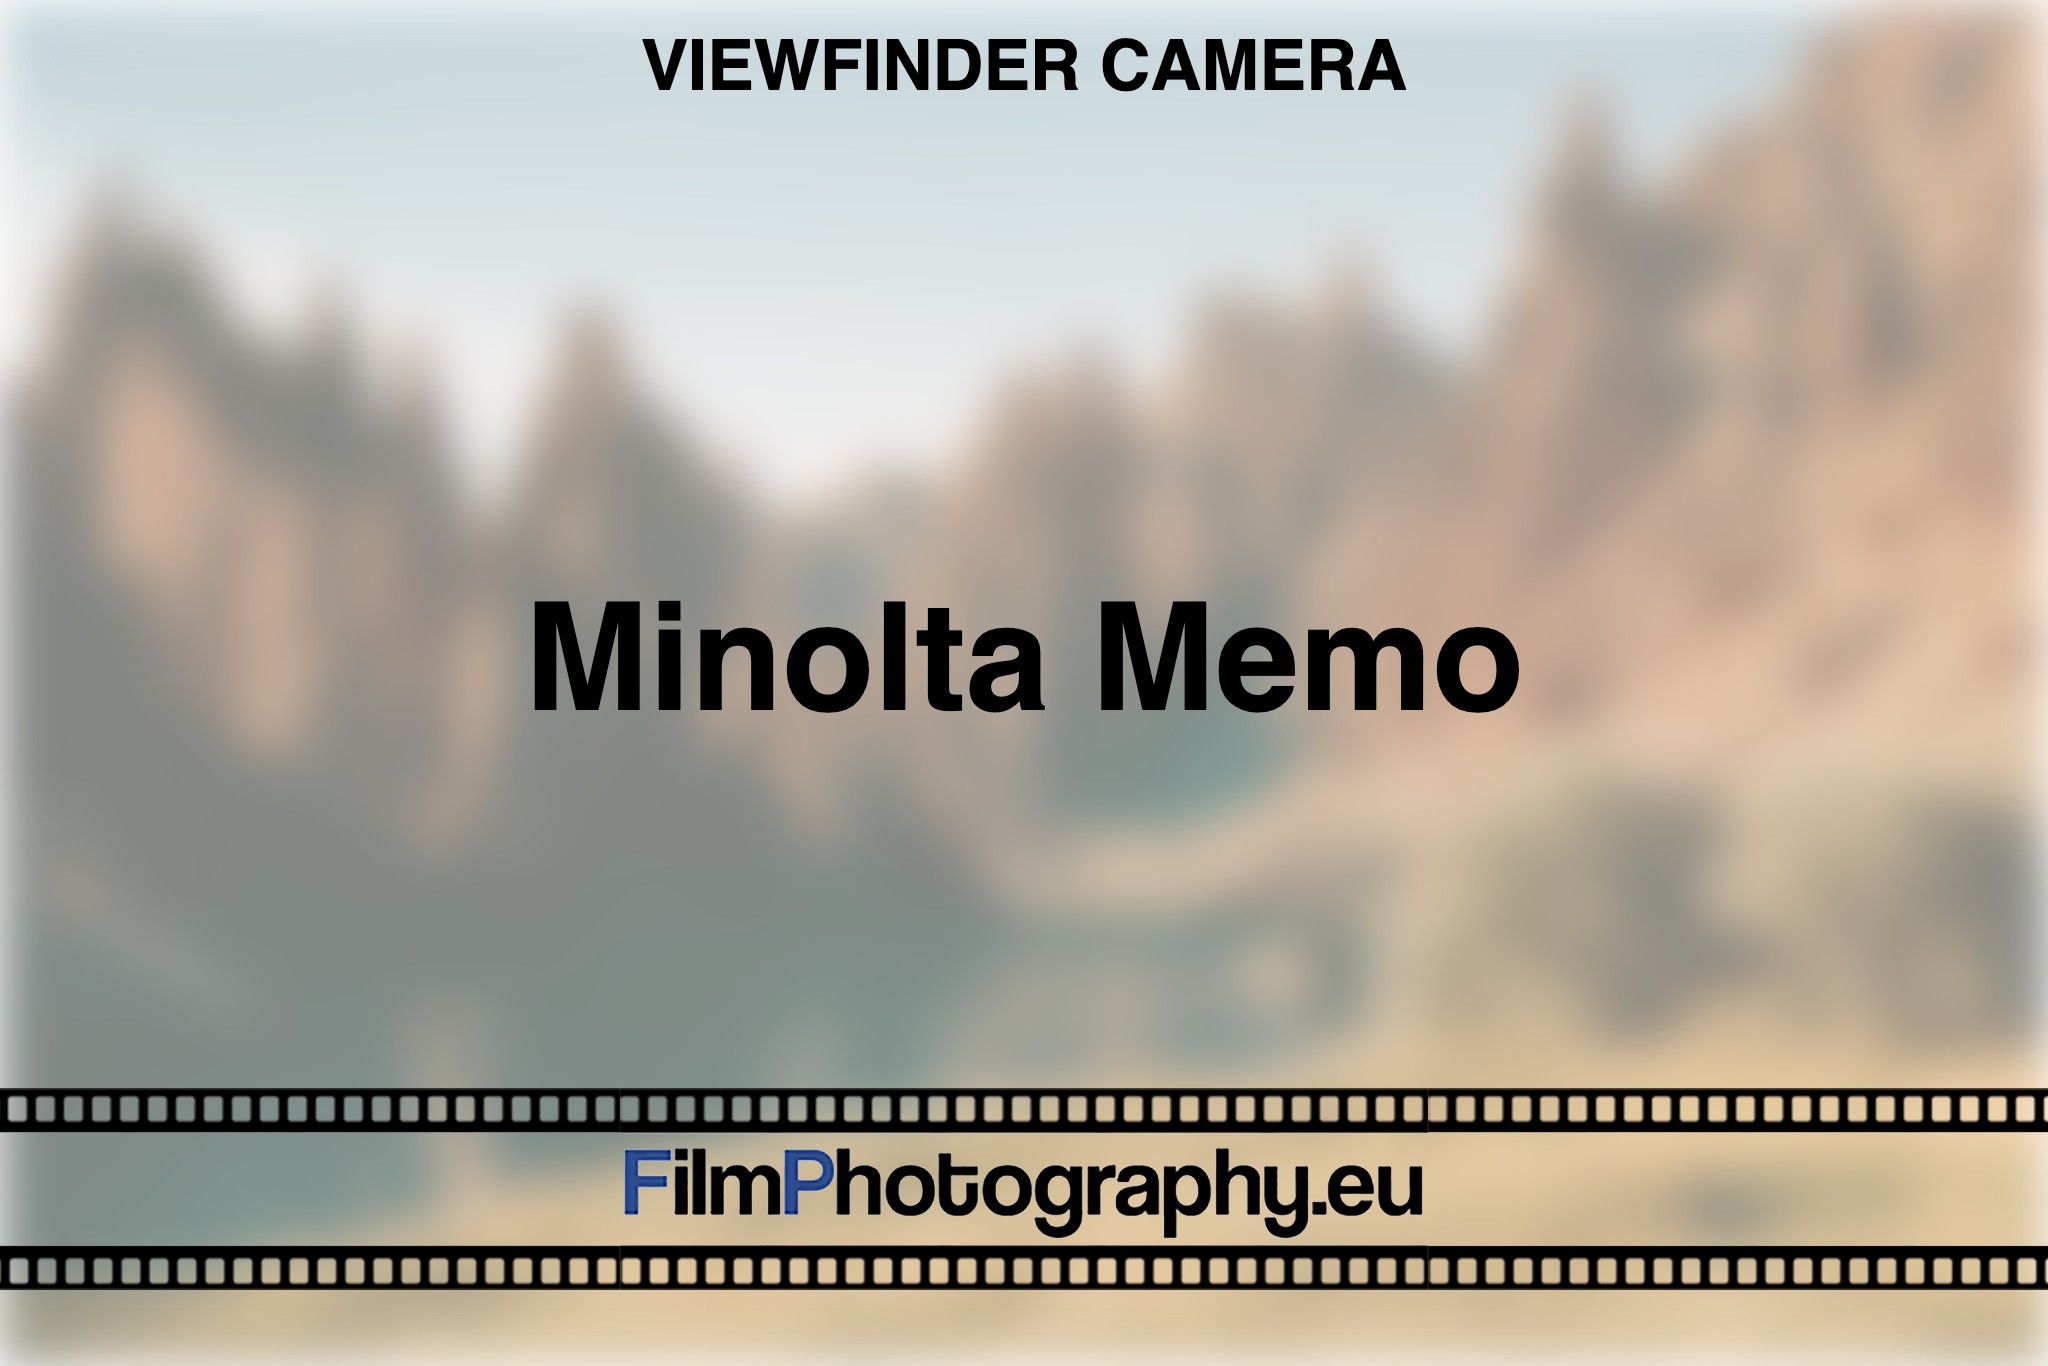 minolta-memo-viewfinder-camera-bnv